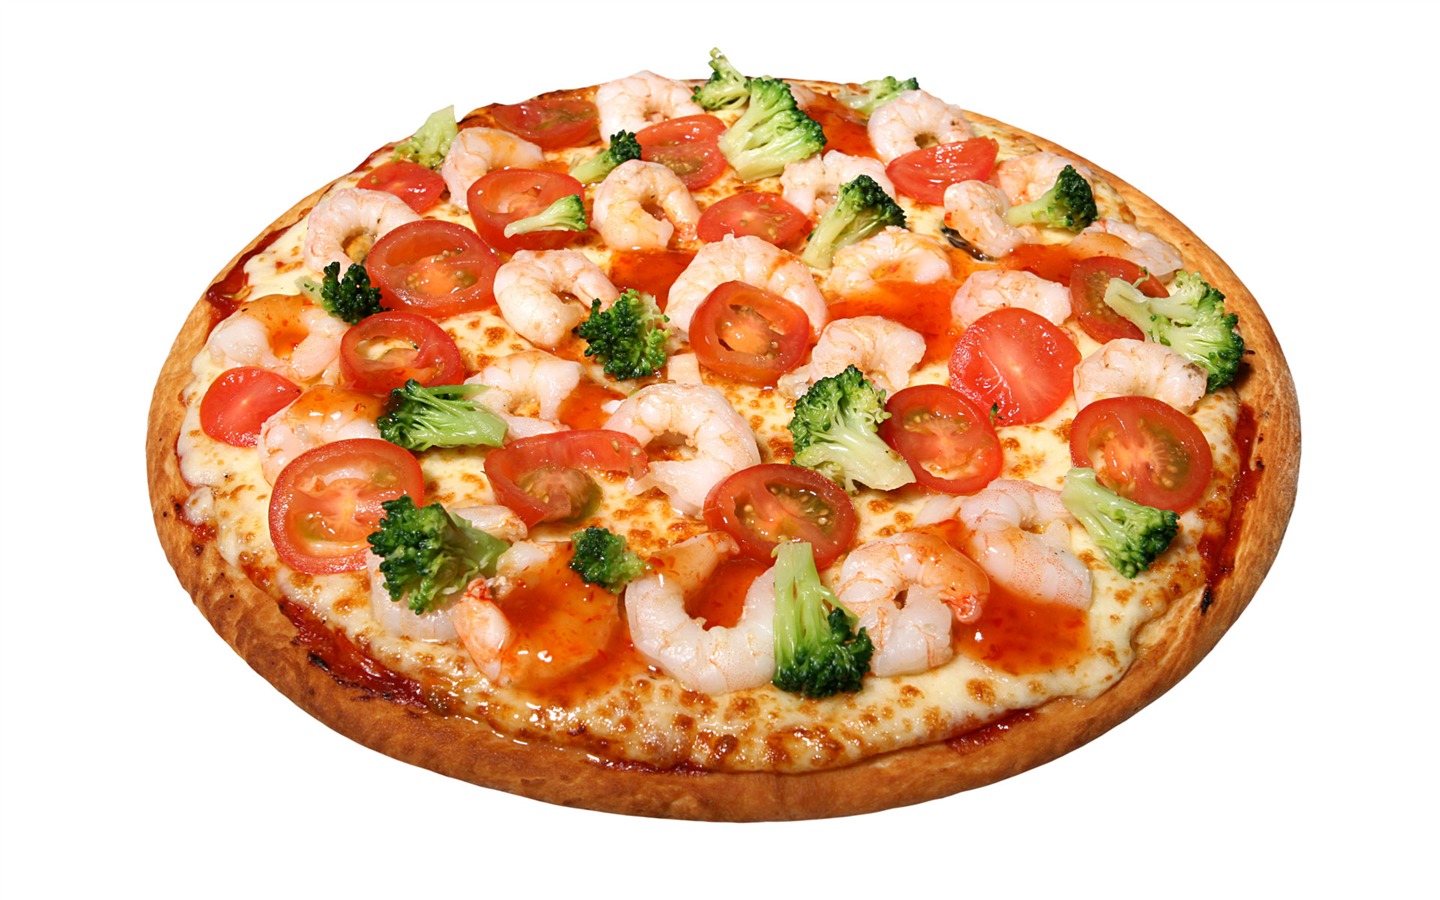 Fondos de pizzerías de Alimentos (4) #13 - 1440x900